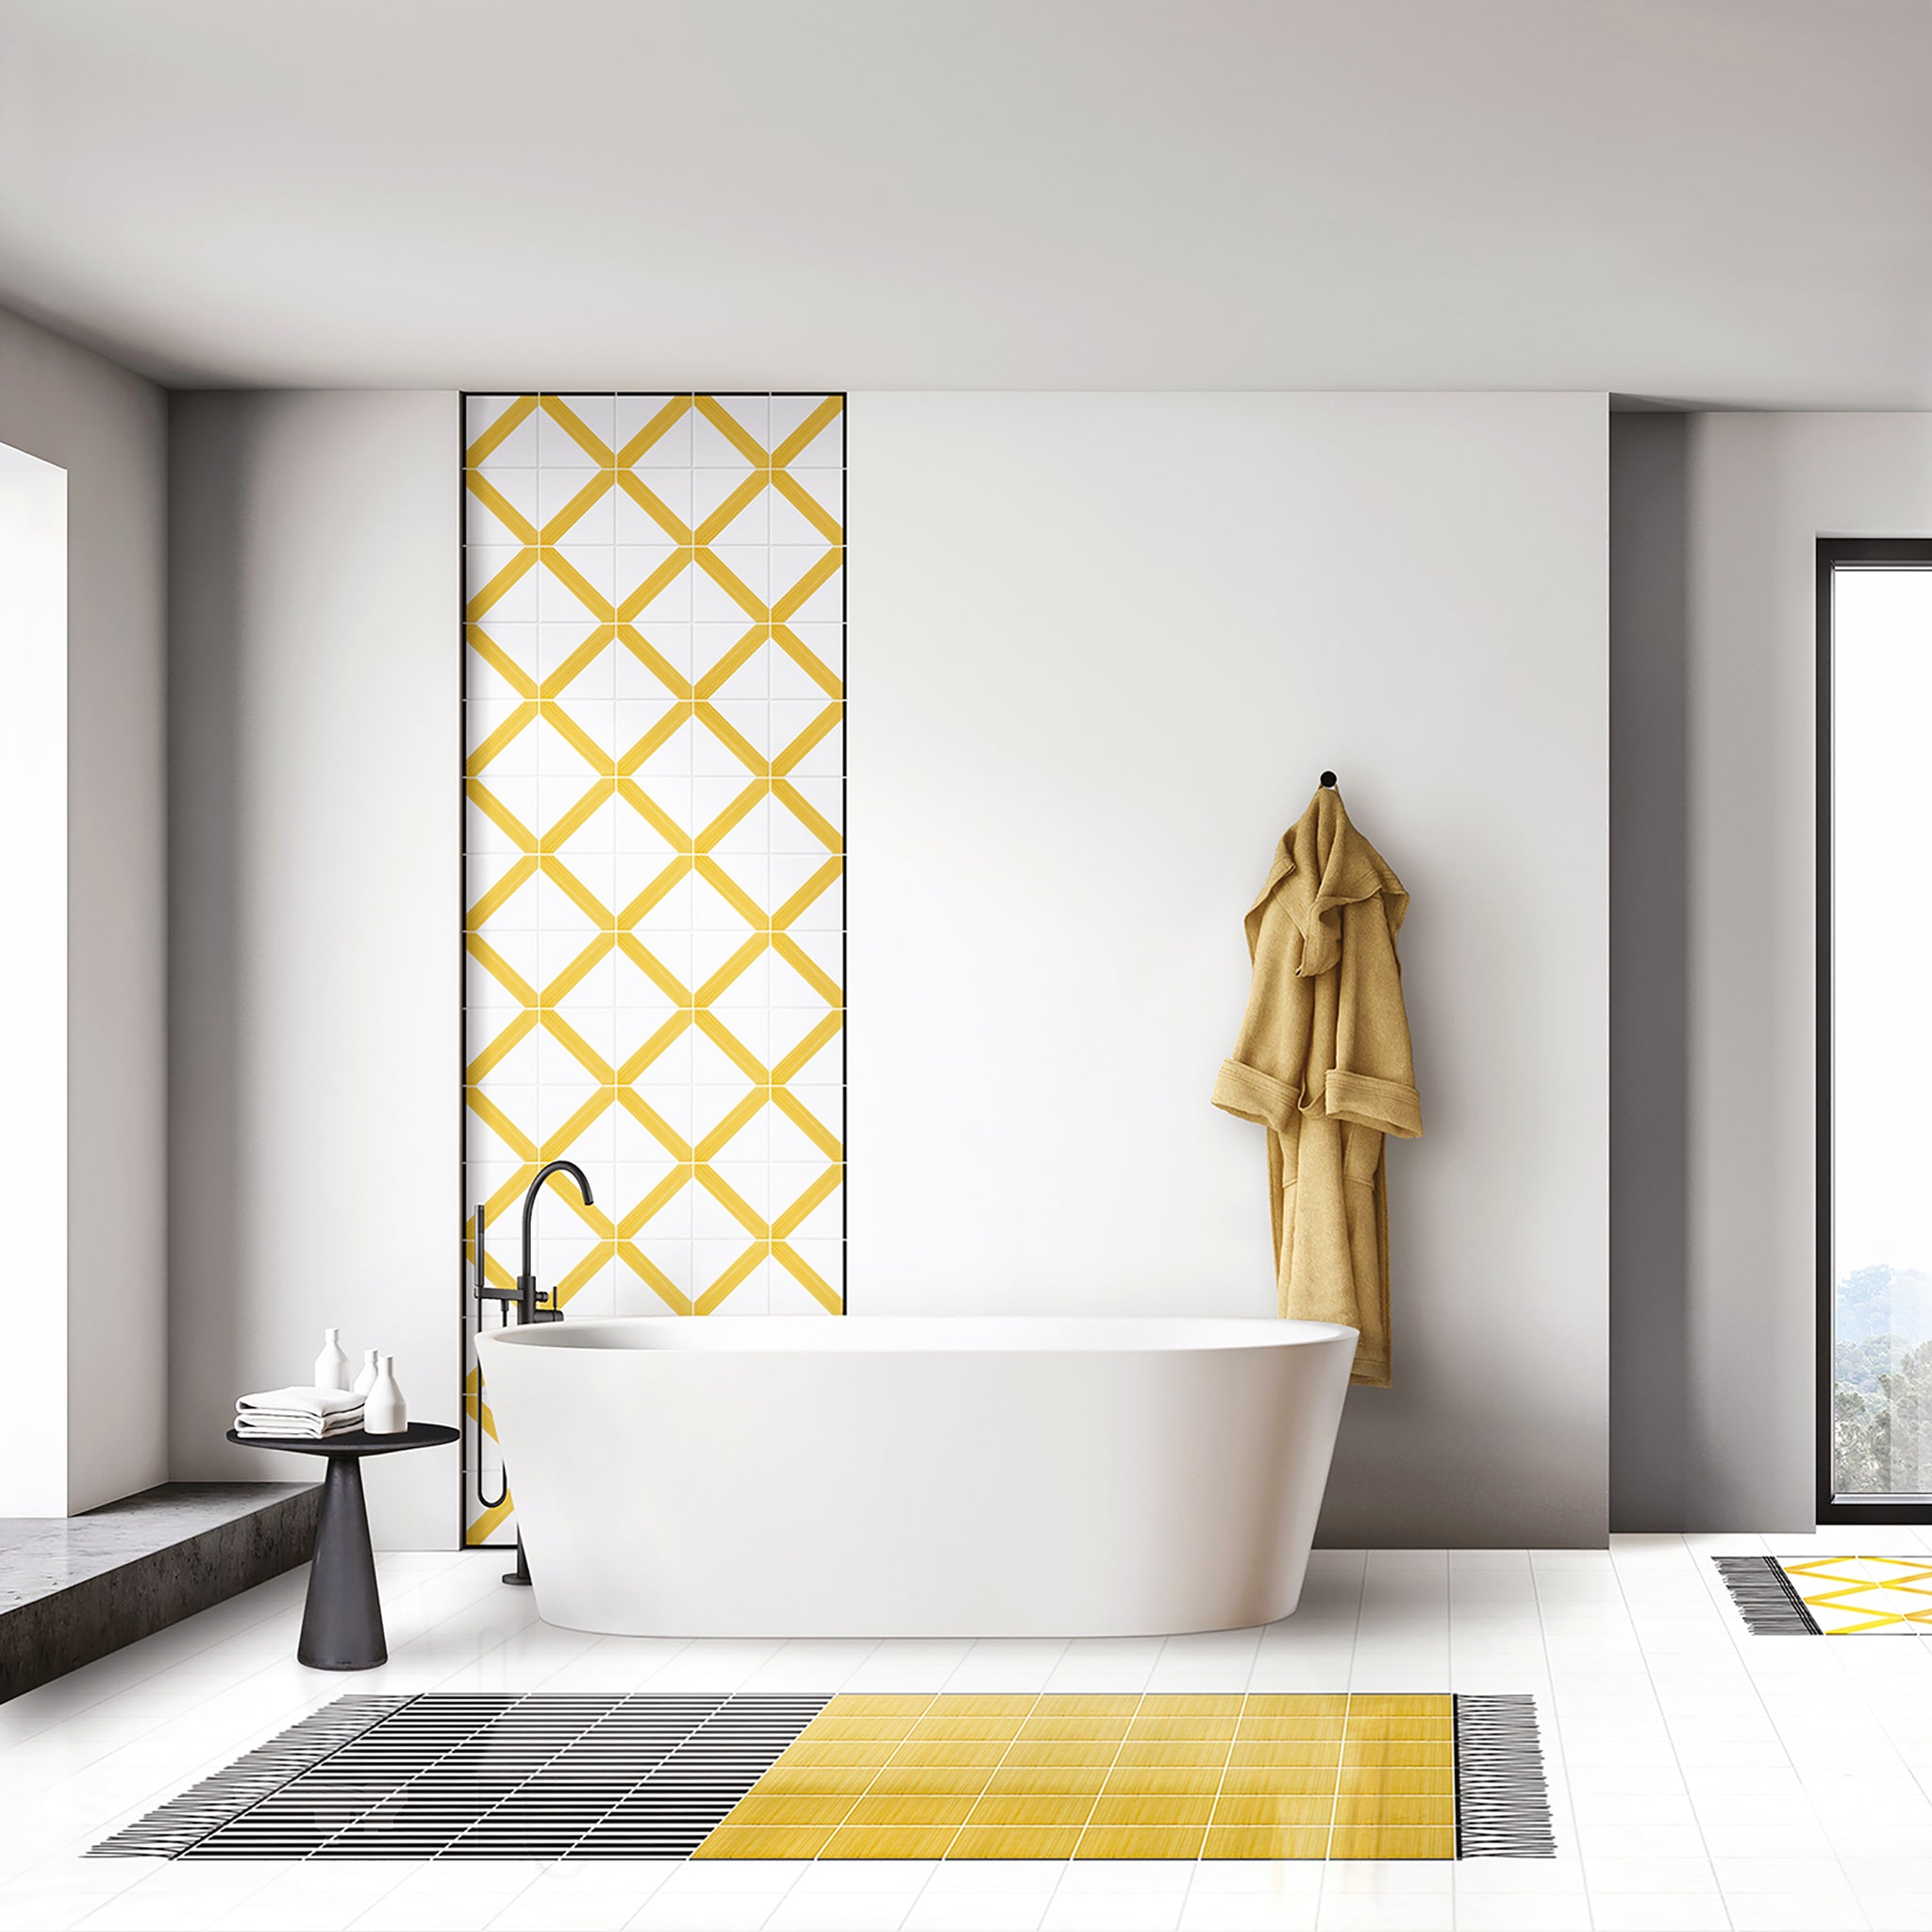 Carpet Total Yellow Ceramic Composition by Giuliano Andrea dell’Uva 120 X 80 - Alternative view 1